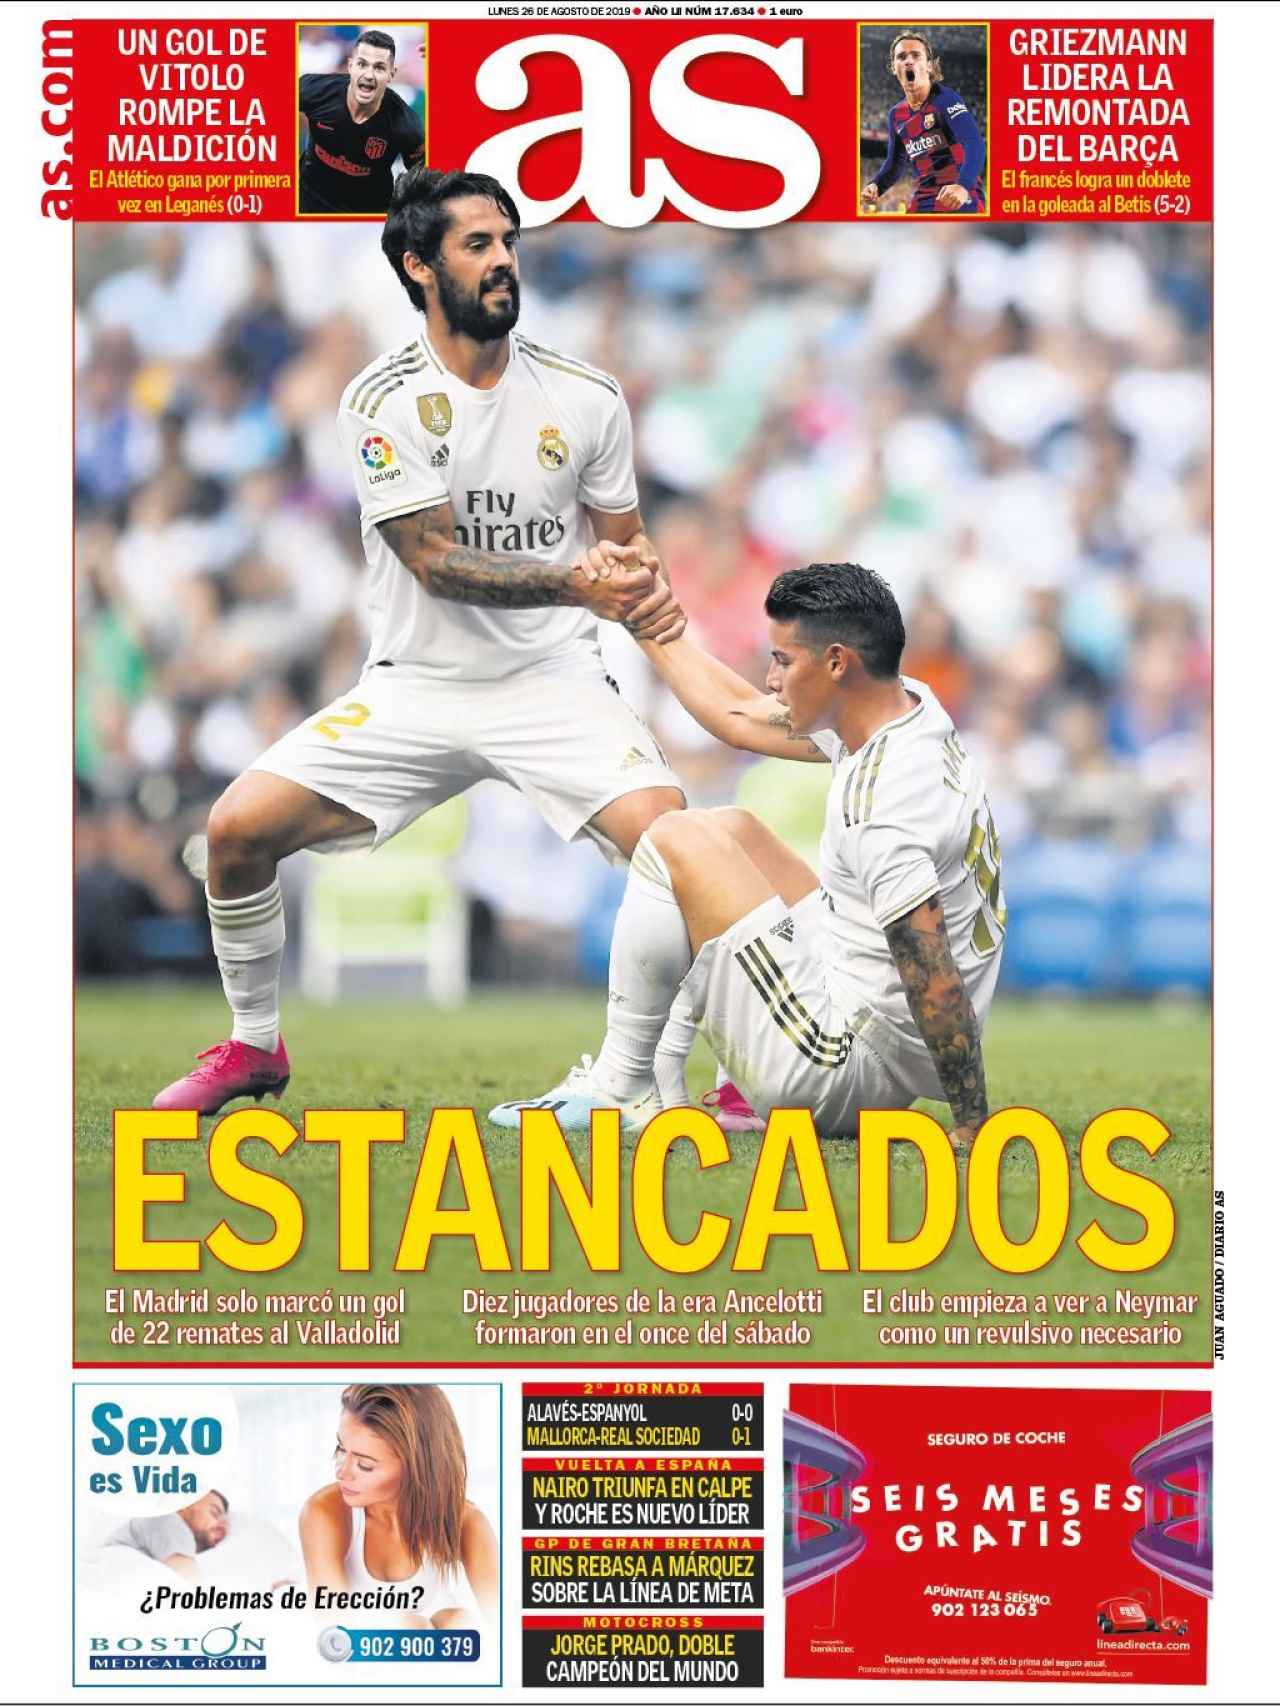 La portada del diario AS (26/08/2019)